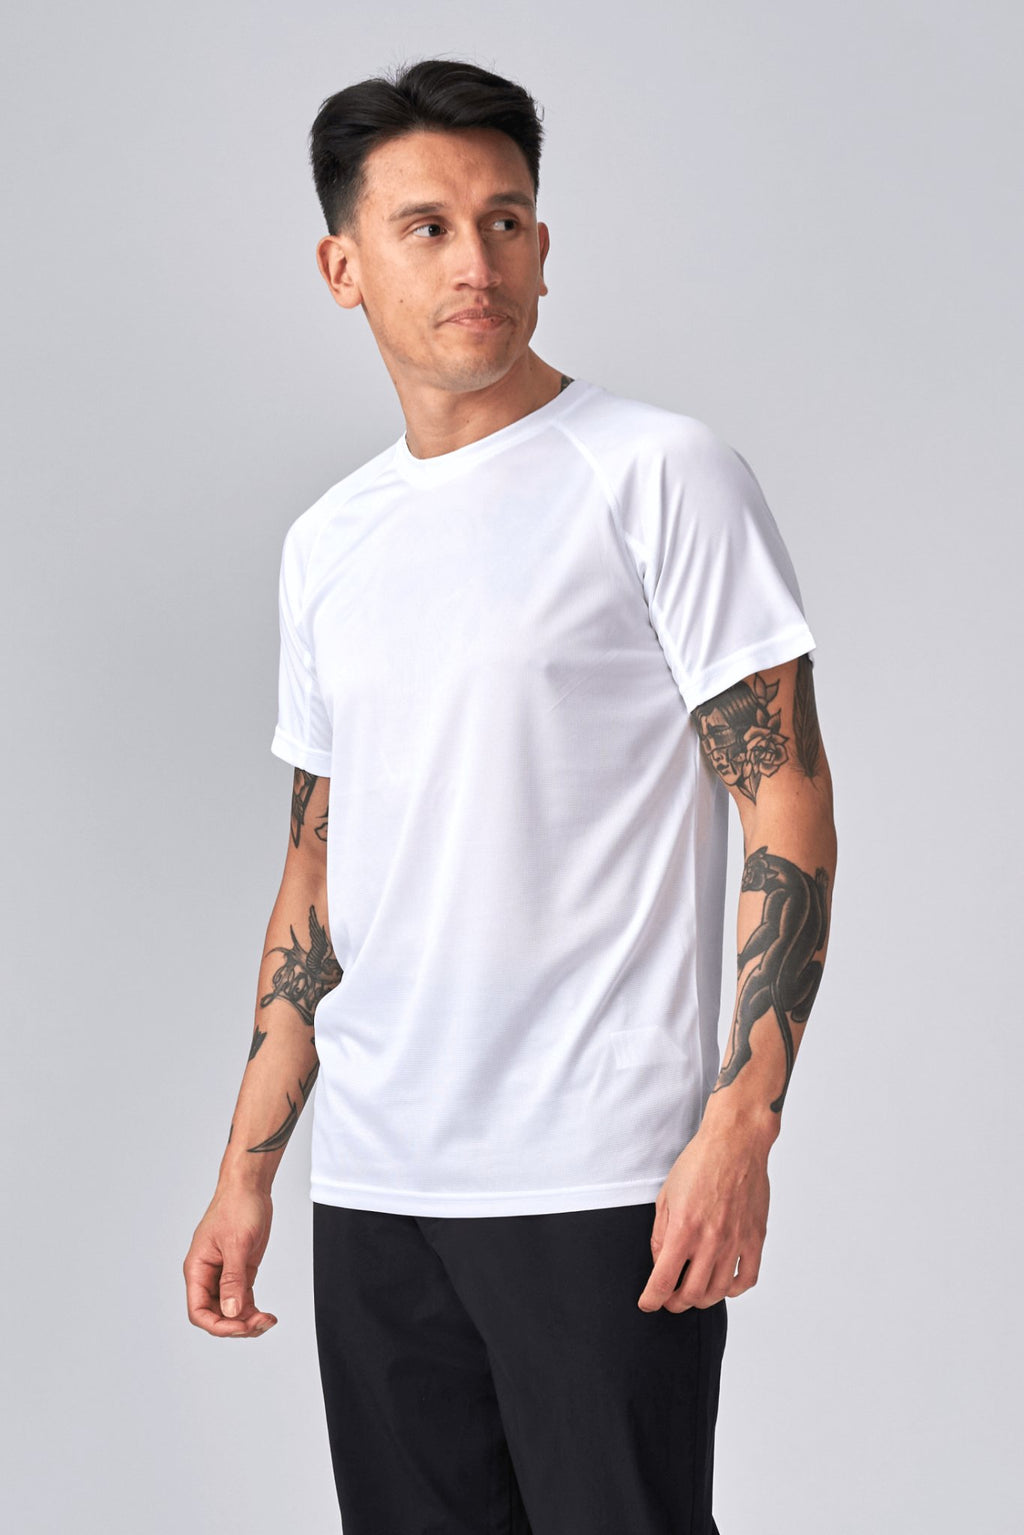 Training T-shirt - White